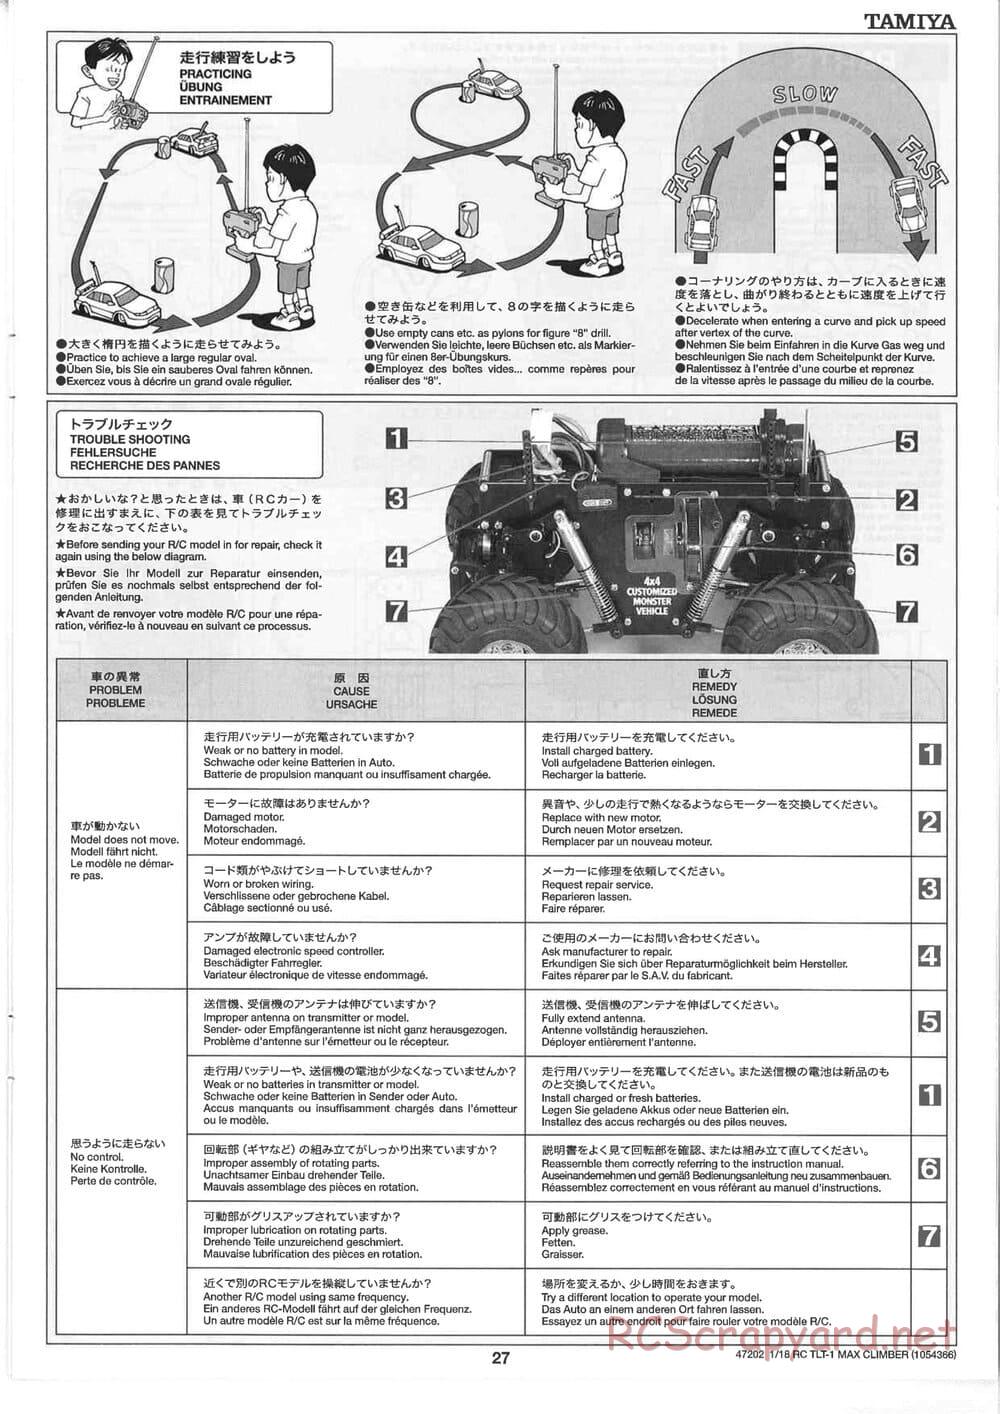 Tamiya - Max Climber - TLT-1 Chassis - Manual - Page 27